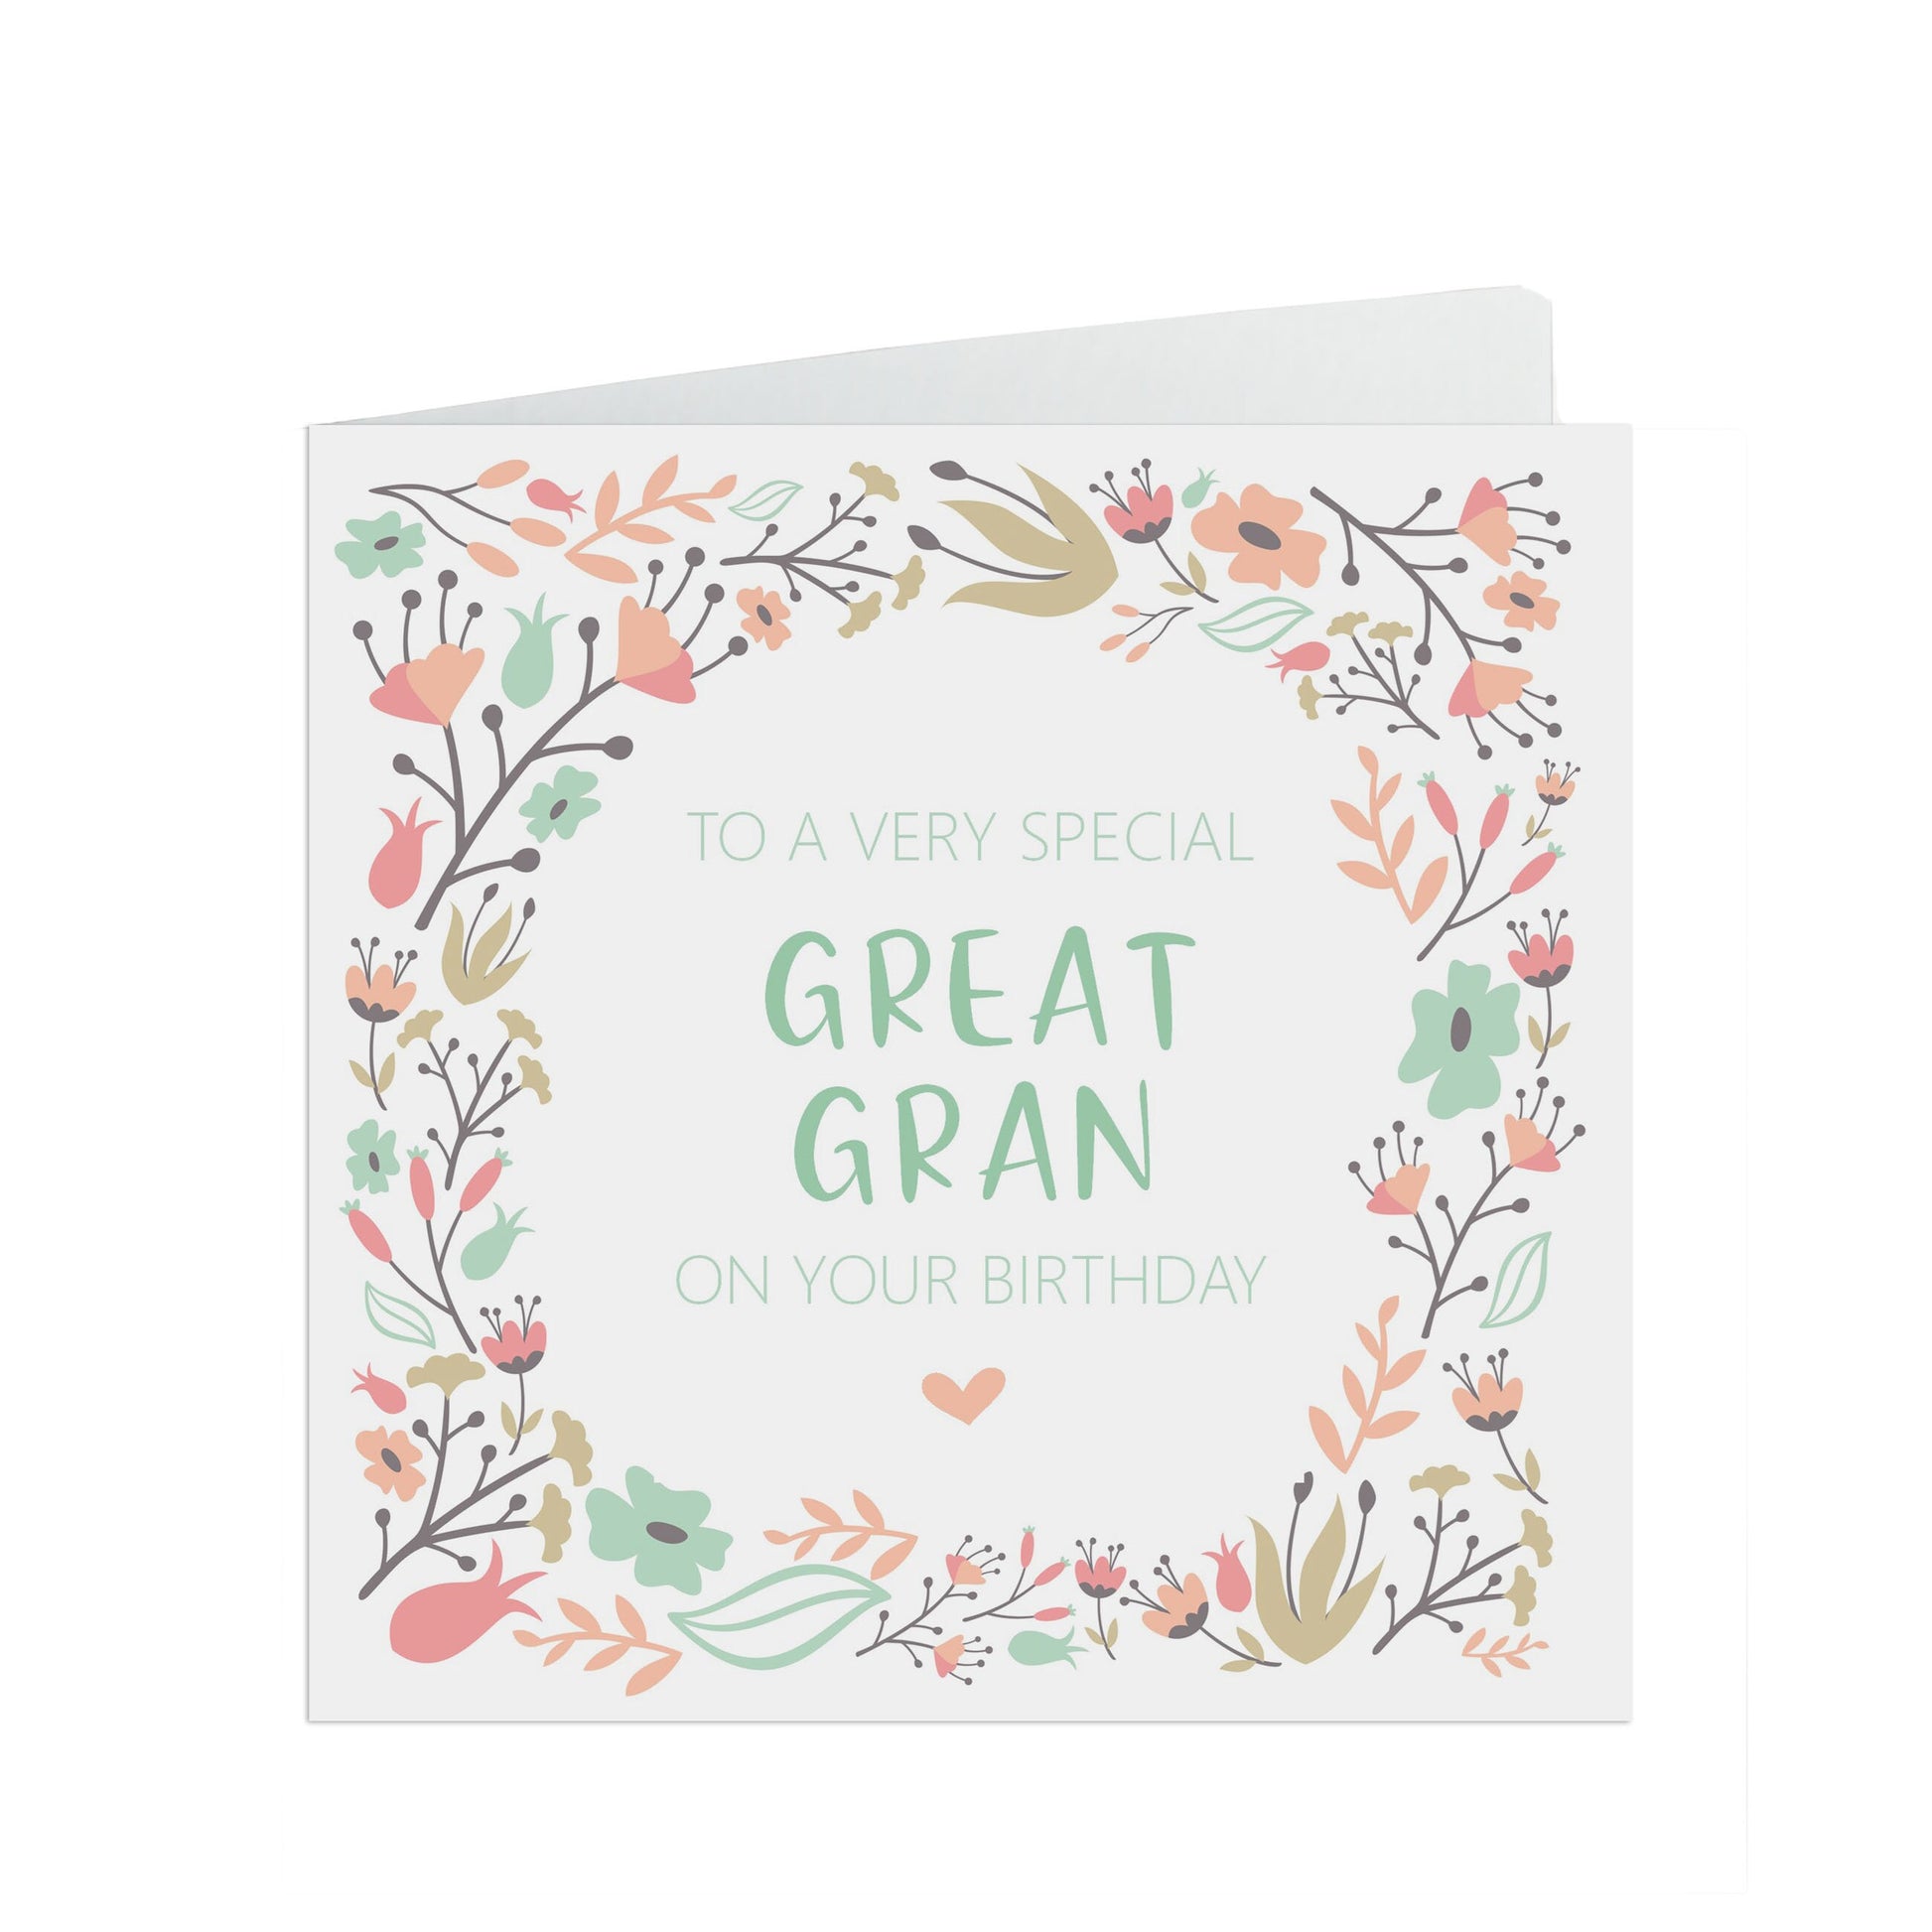 Great Gran Birthday Card, Sage & Peach Flower Design